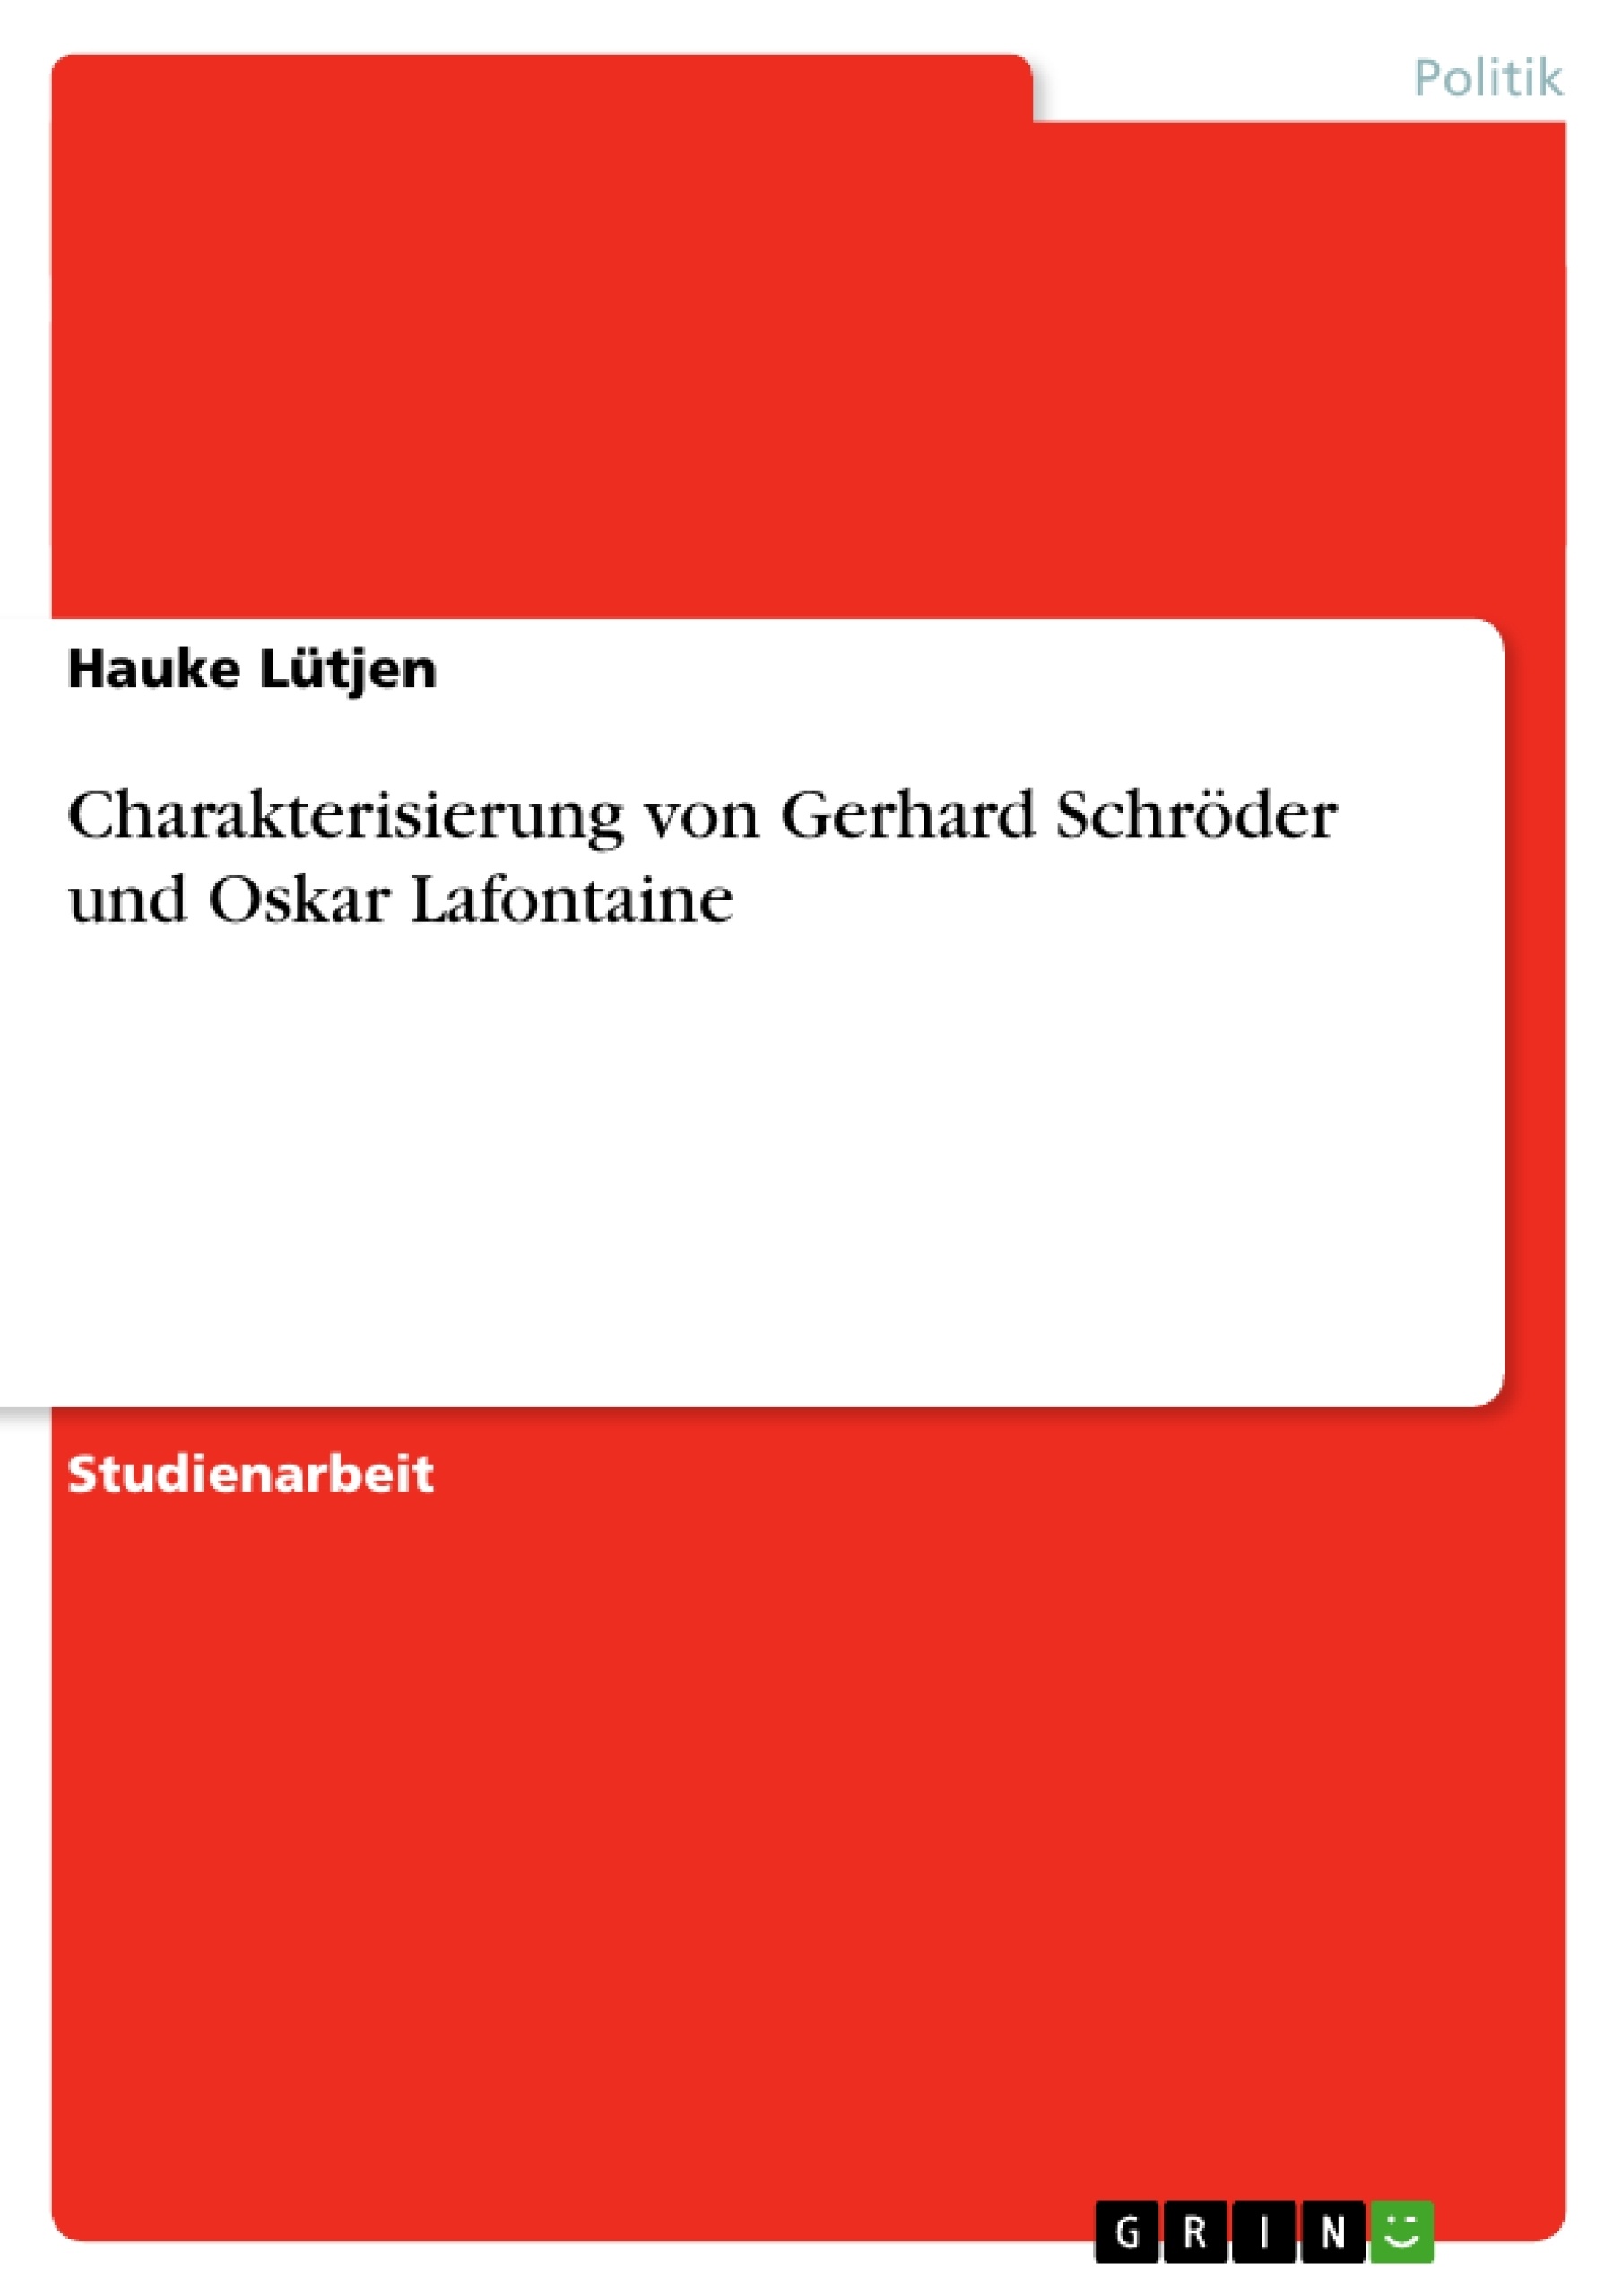 Título: Charakterisierung von Gerhard Schröder und Oskar Lafontaine